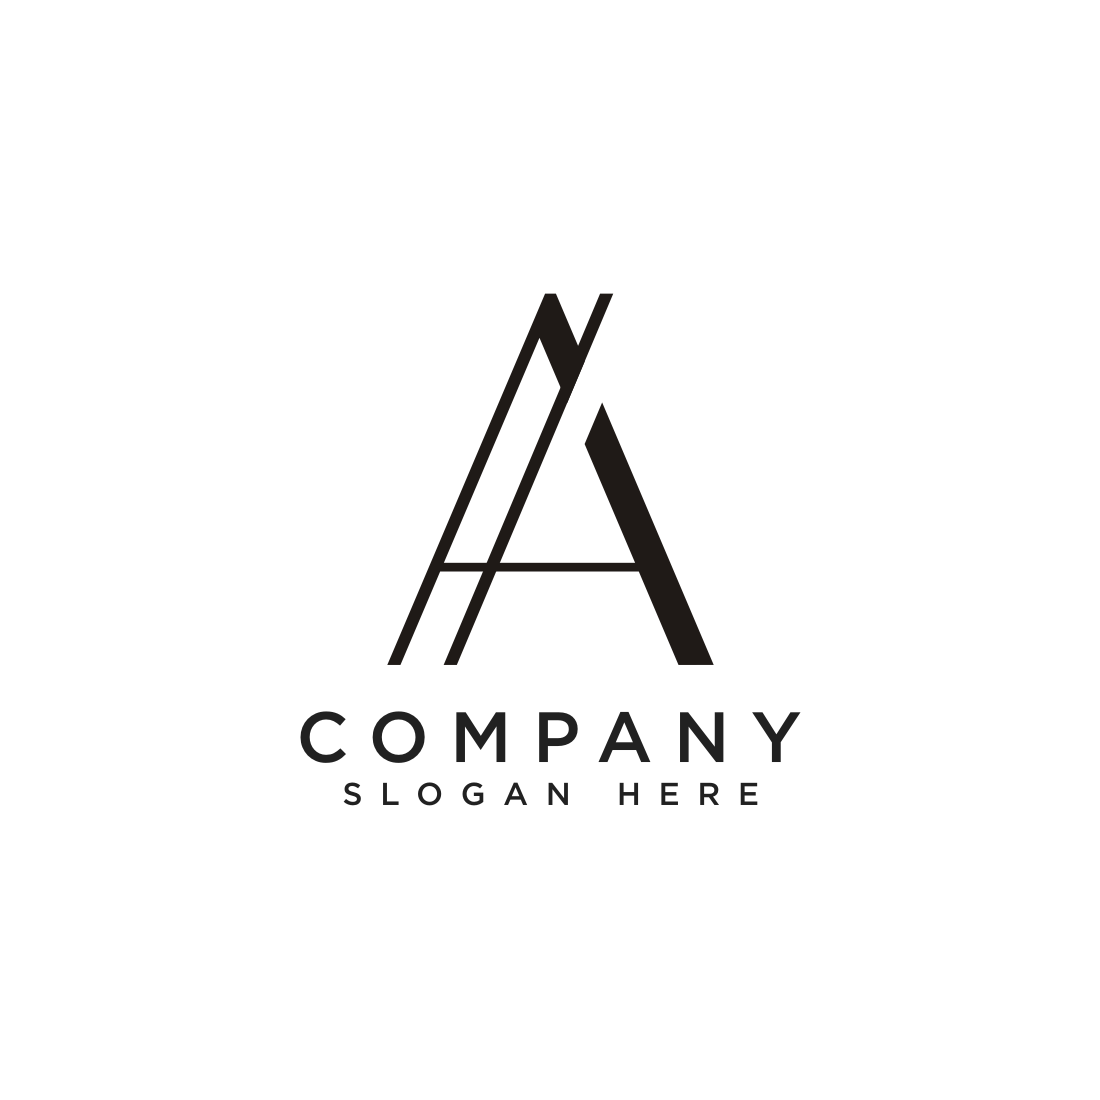 Monogram A Logo Design Vector main cover